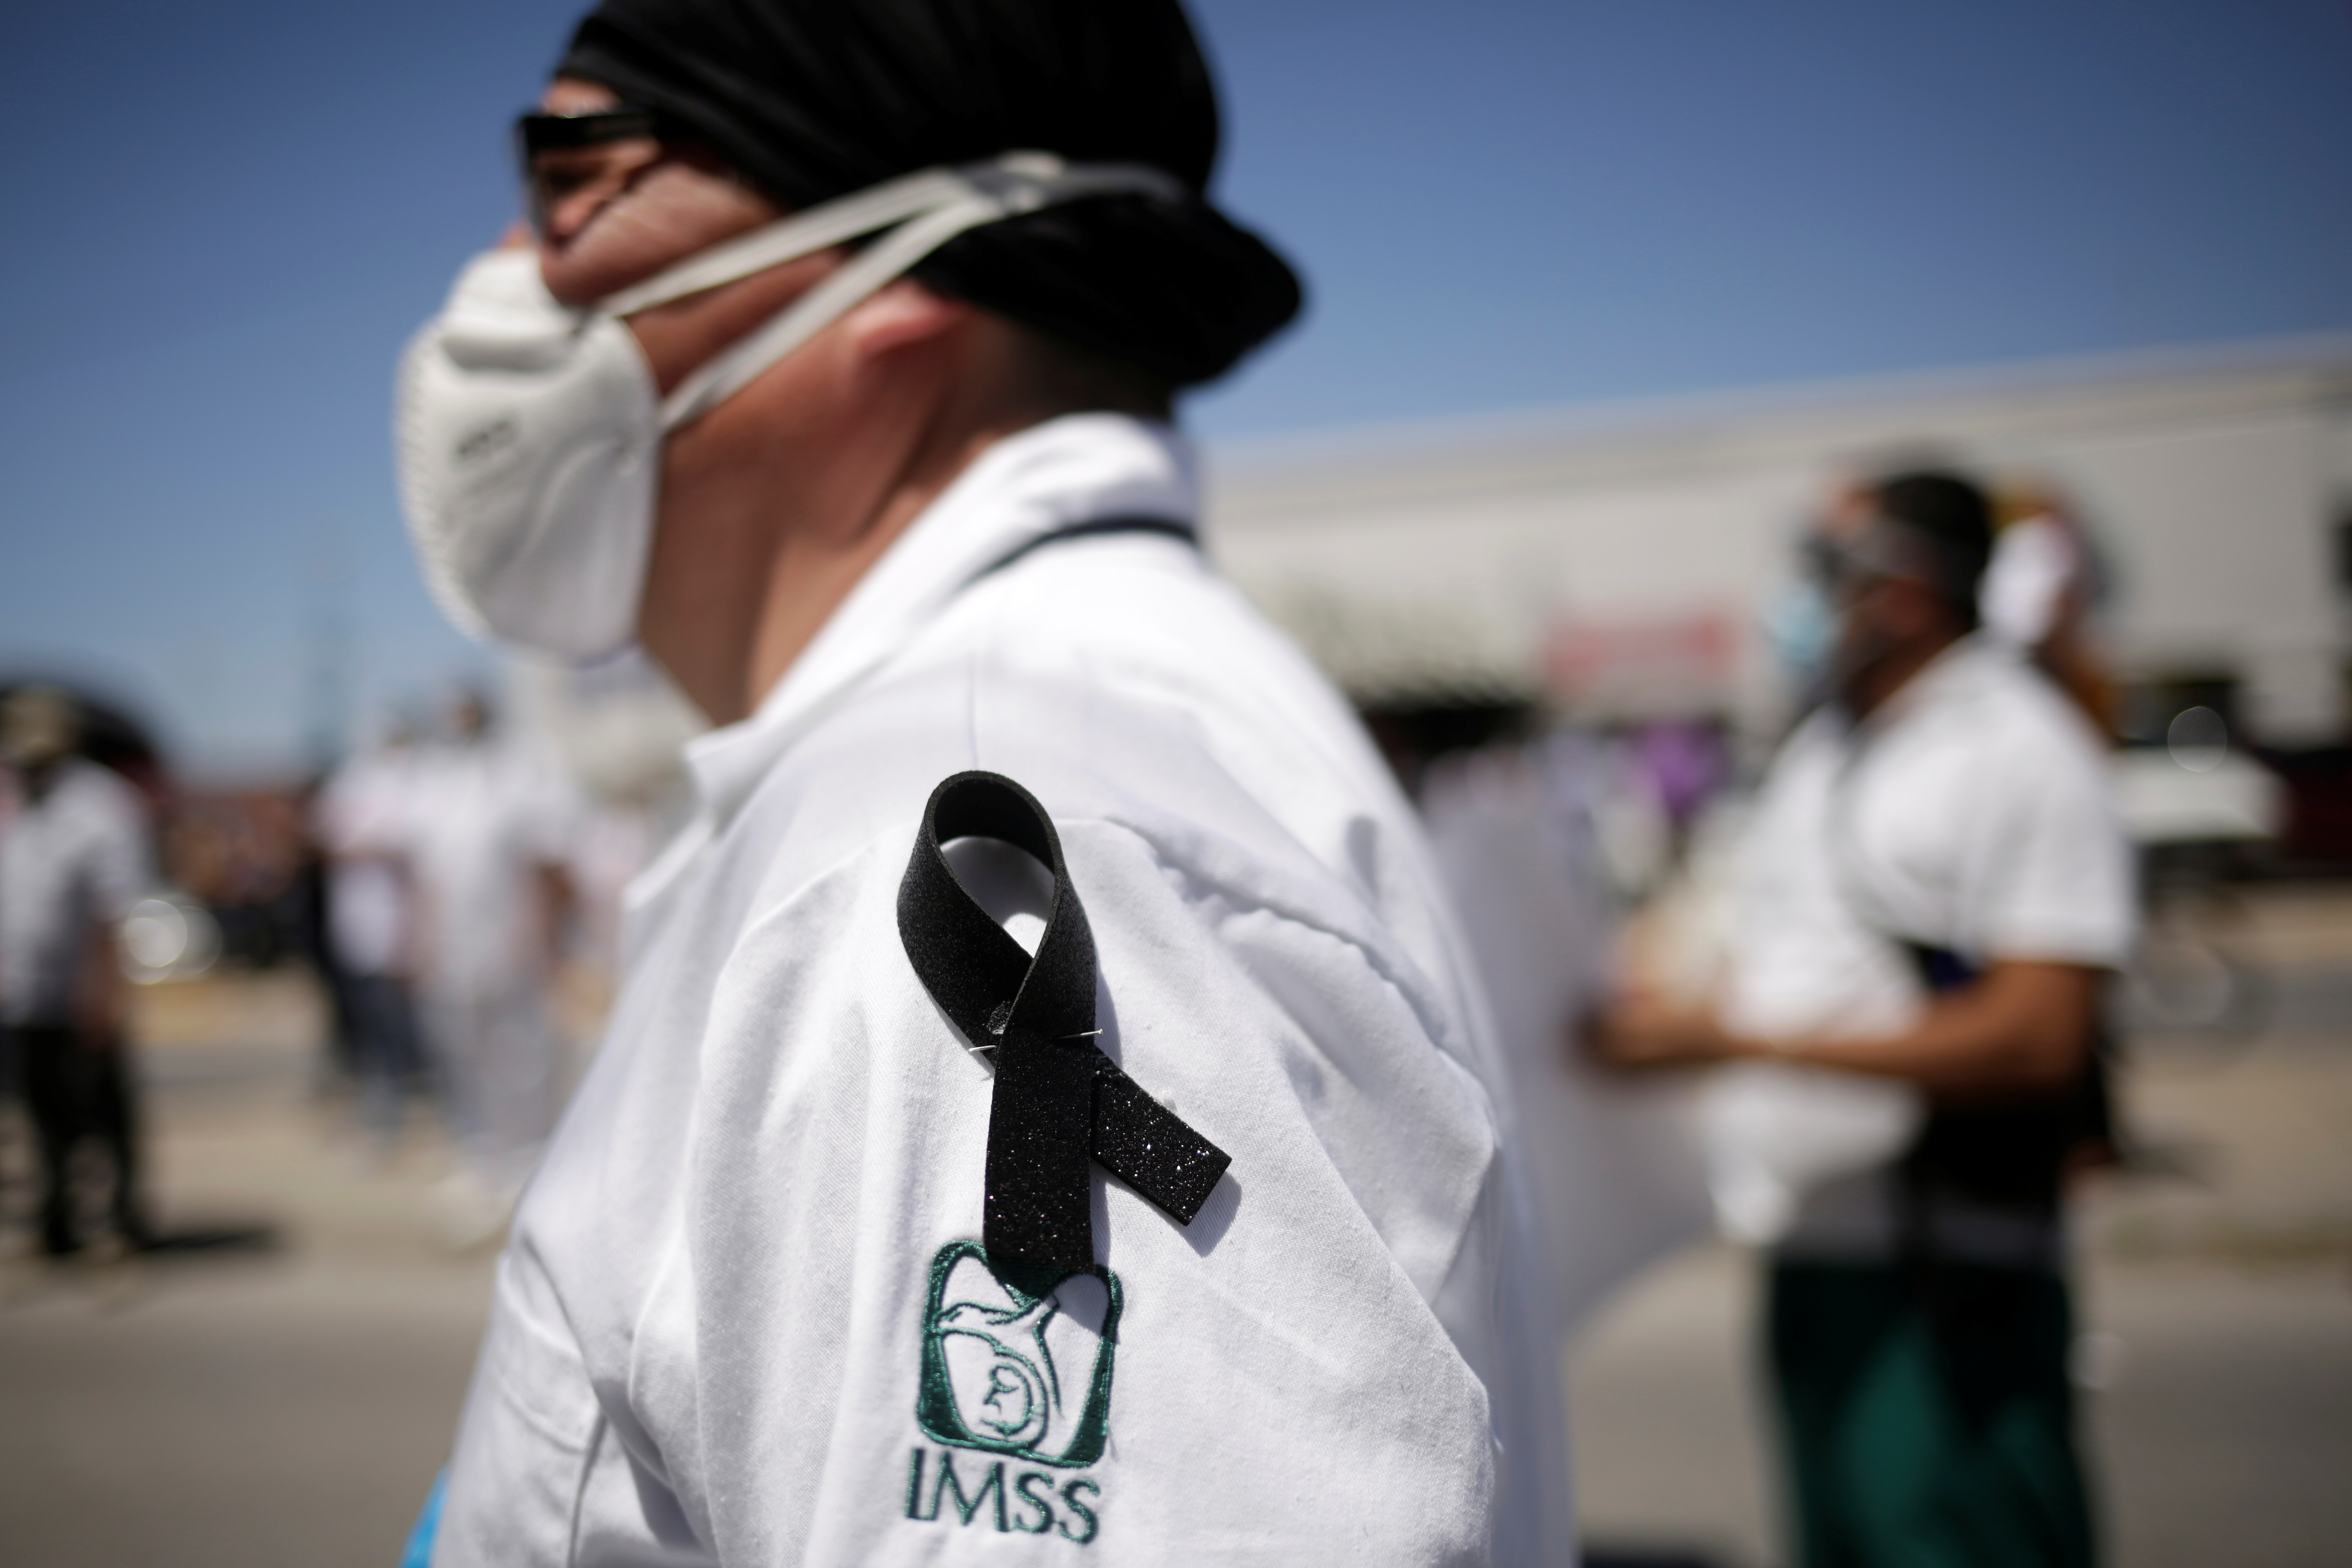 La Secretaría de Salud reportó hasta el pasado 25 de agosto un total de 97,632 profesionales infectados de COVID-19 (Foto: Reuters/Jose Luis Gonzalez)